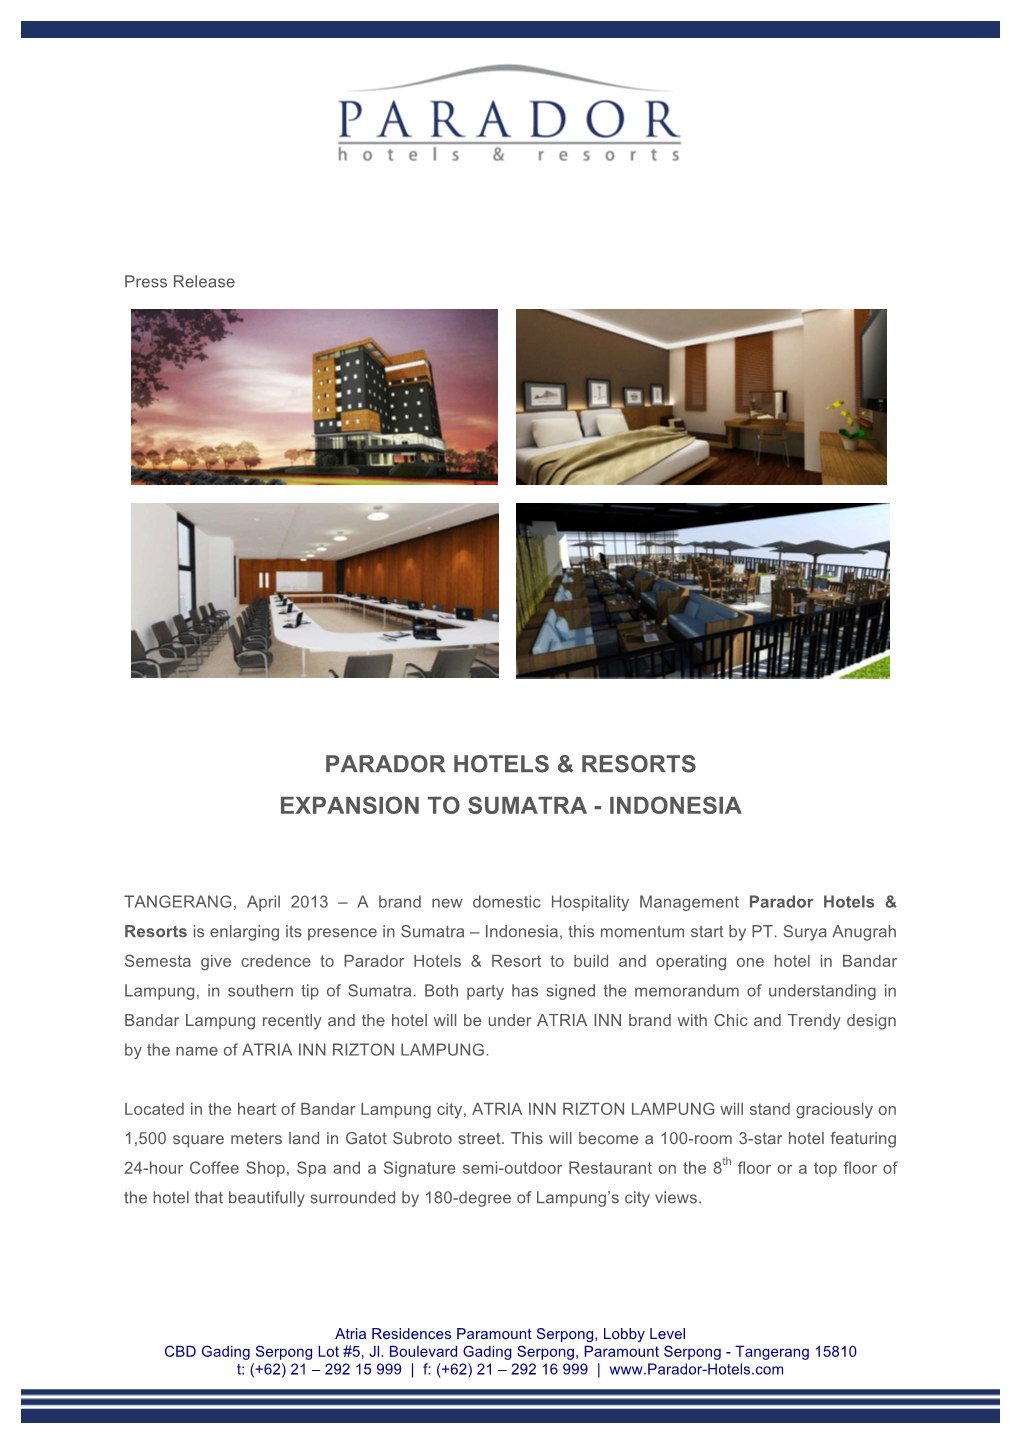 Parador Hotels & Resorts Expansion to Sumatra